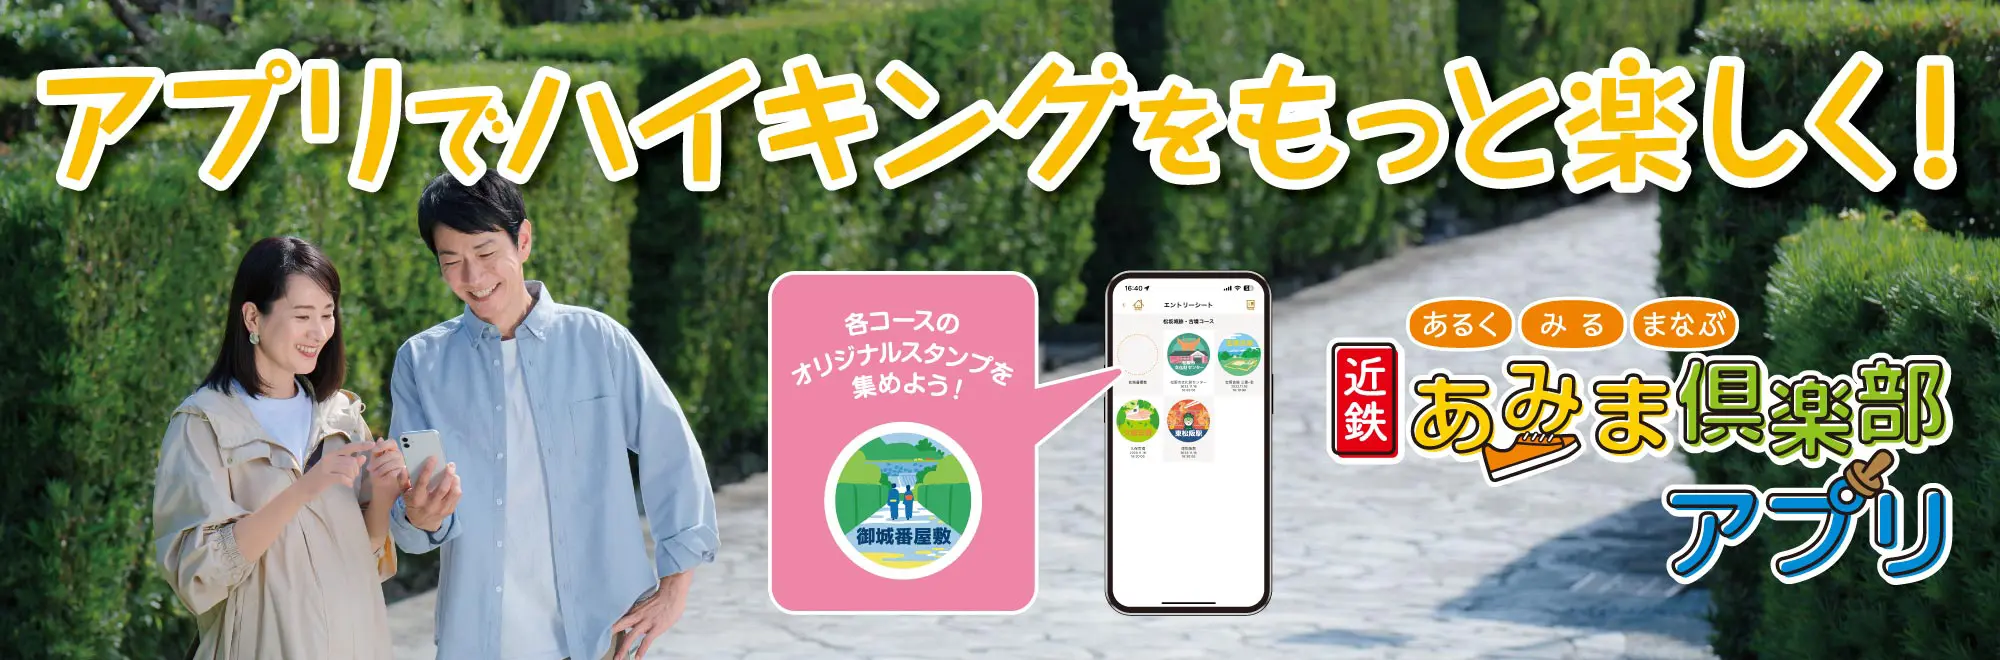 あみま倶楽部アプリ